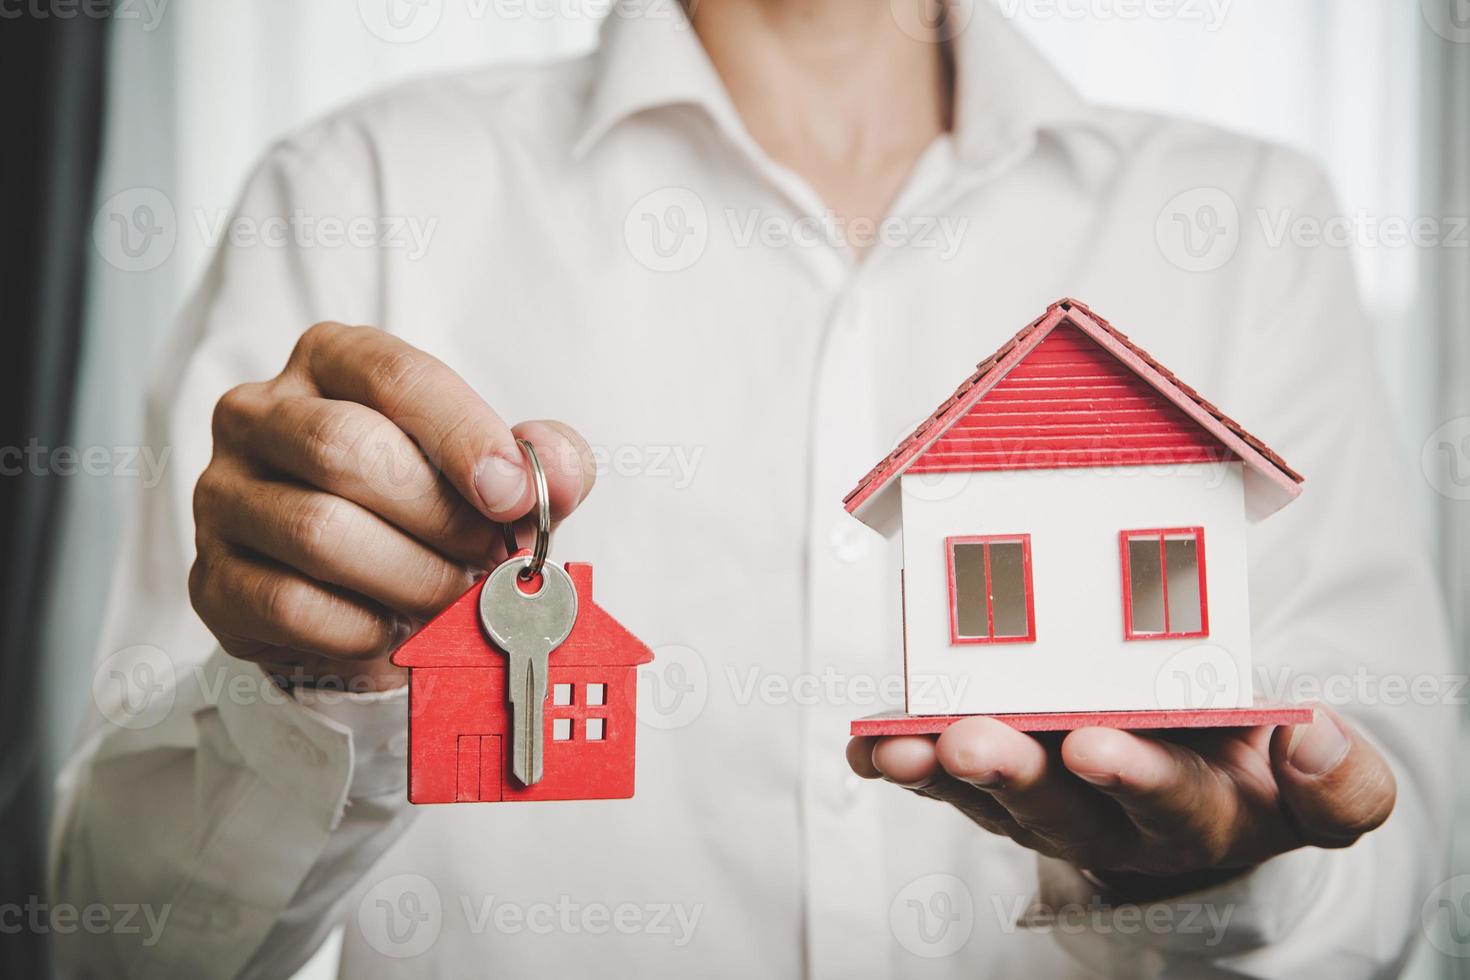 immobilienmakler bieten handhaltehausmodell mit schlüssel für kunden an und kaufen oder verkaufen haus. hypothekendarlehensgenehmigung wohnungsbaudarlehens- und versicherungskonzept. Platz kopieren foto